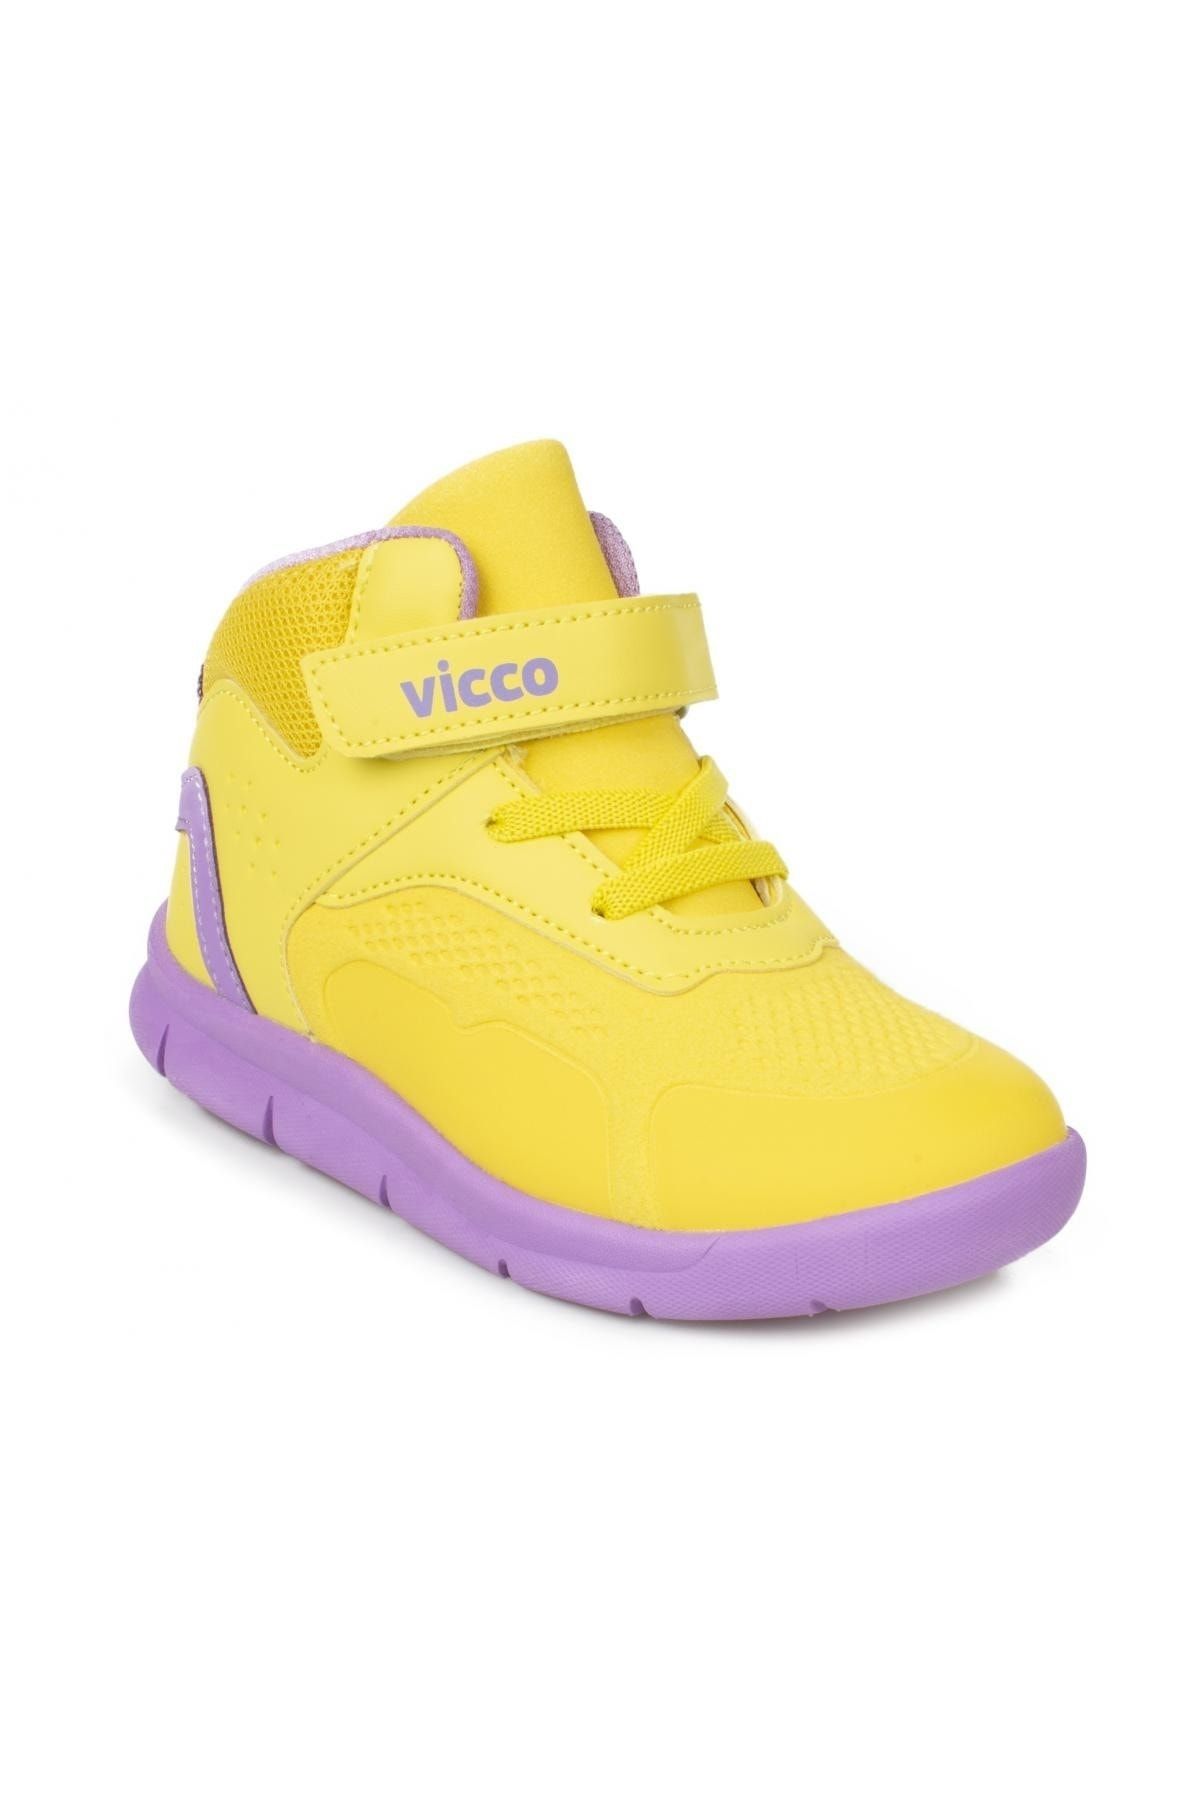 Vicco Nano Hafif Kız Çocuk Sarı Günlük Ayakkabı